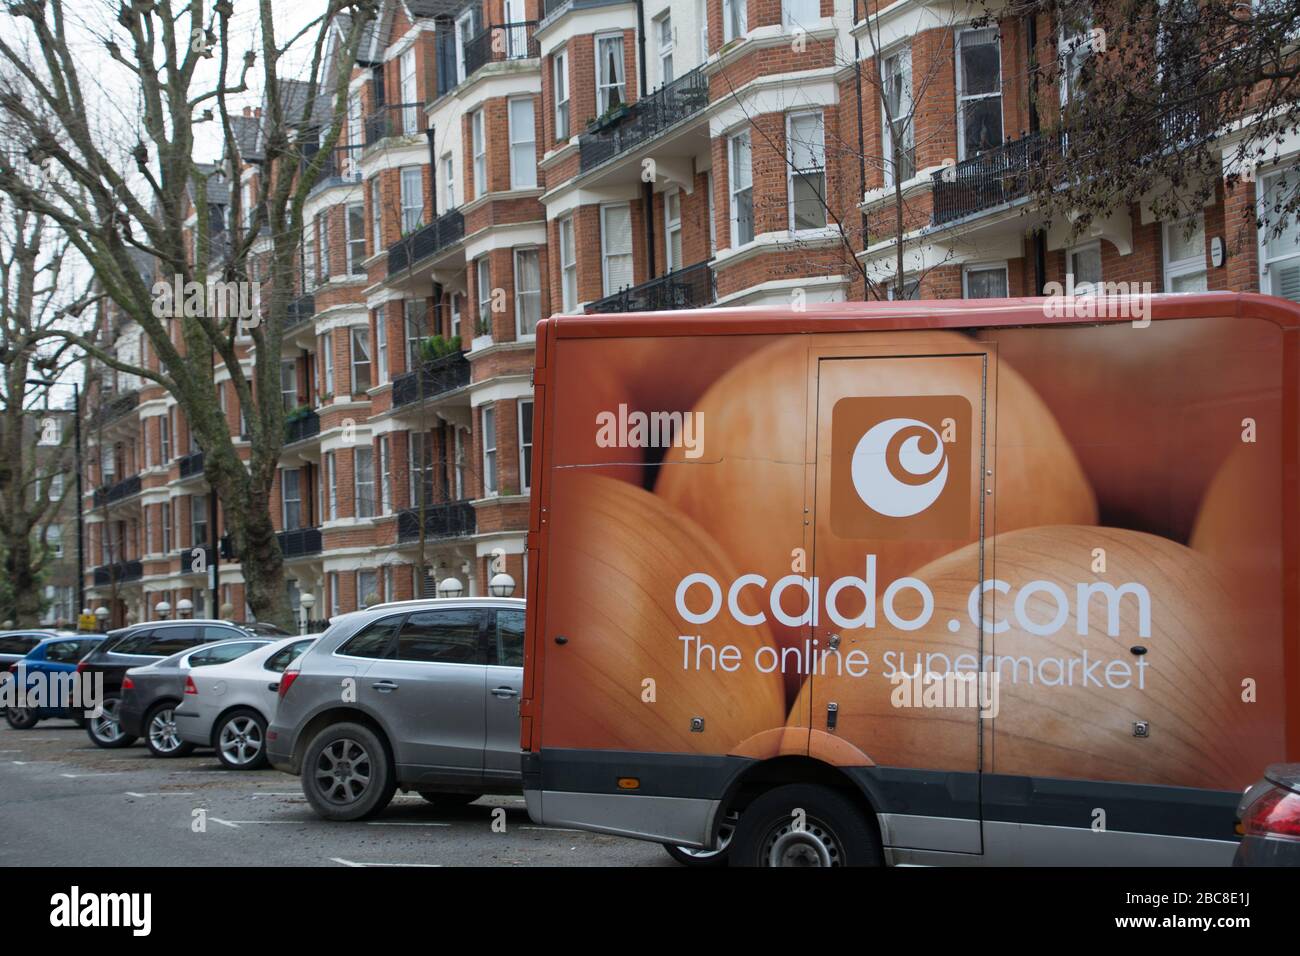 Londres- Ocado compagnie de livraison de supermarché en ligne Banque D'Images